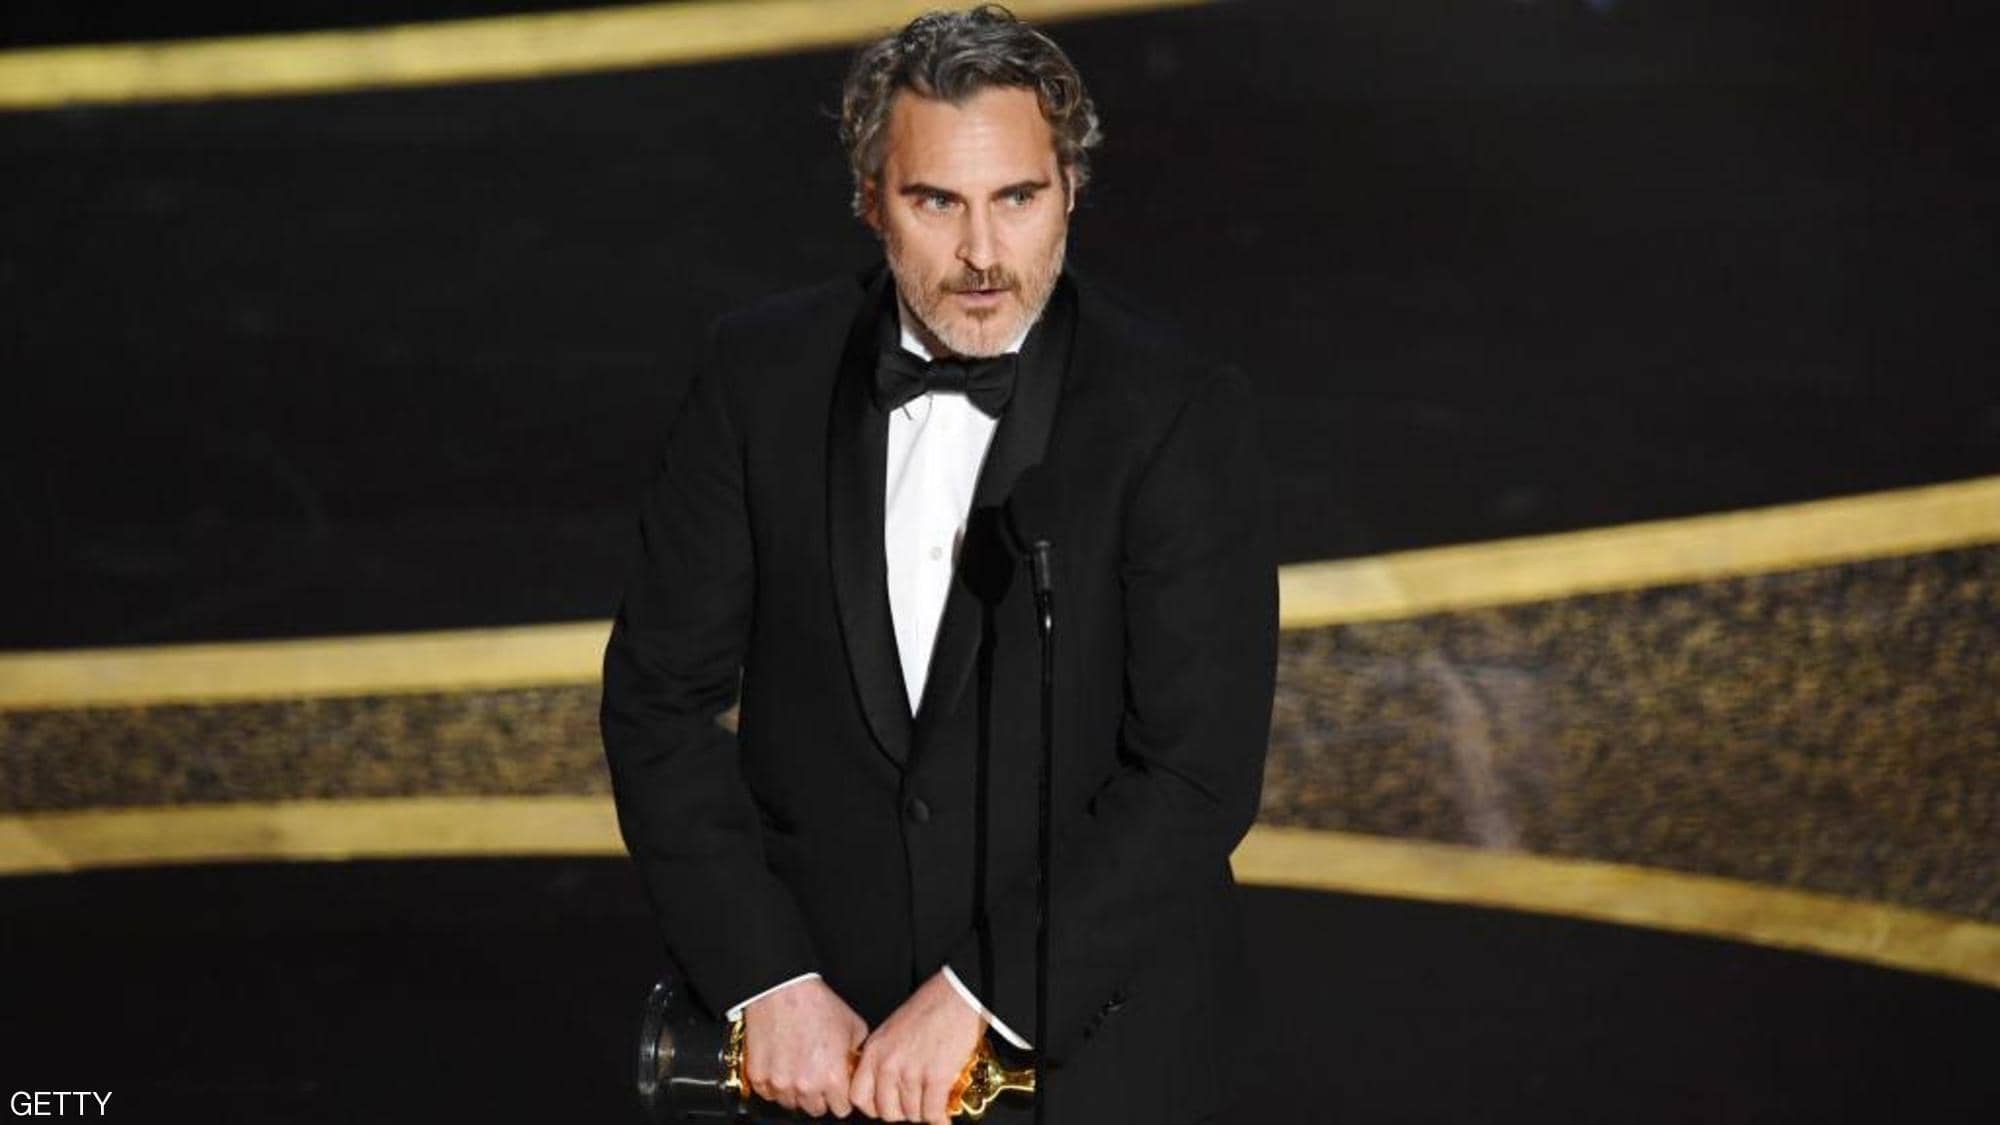 Phoenix won an Academy Award for Best Actor